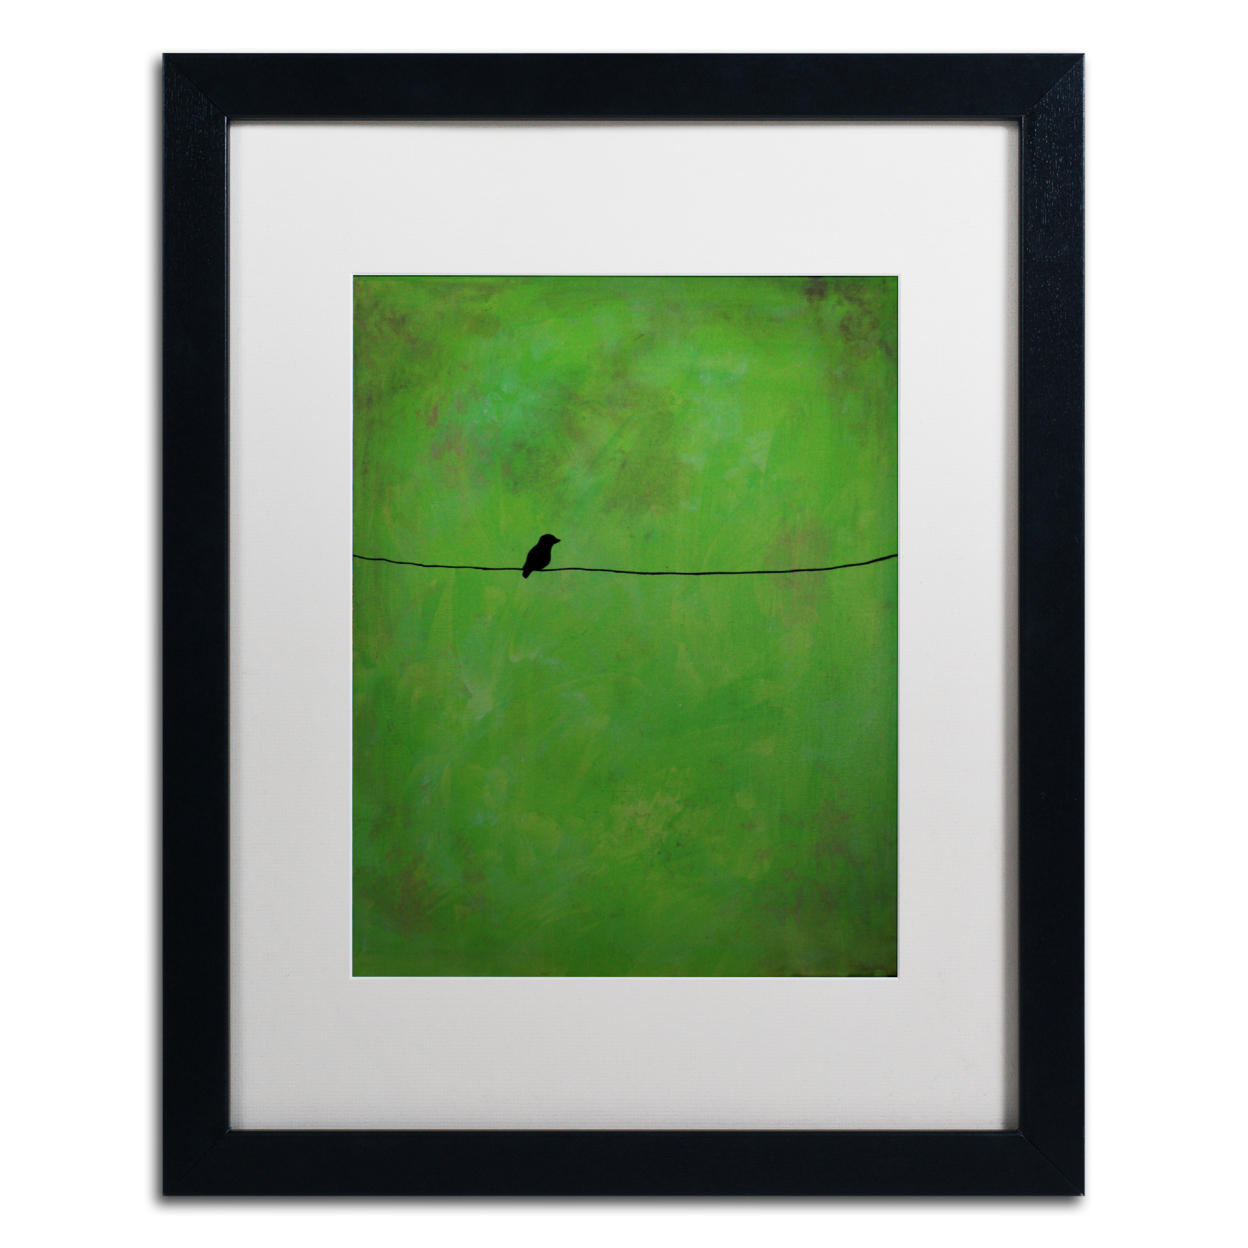 Nicole Dietz 'Lone Bird Green' Black Wooden Framed Art 18 X 22 Inches